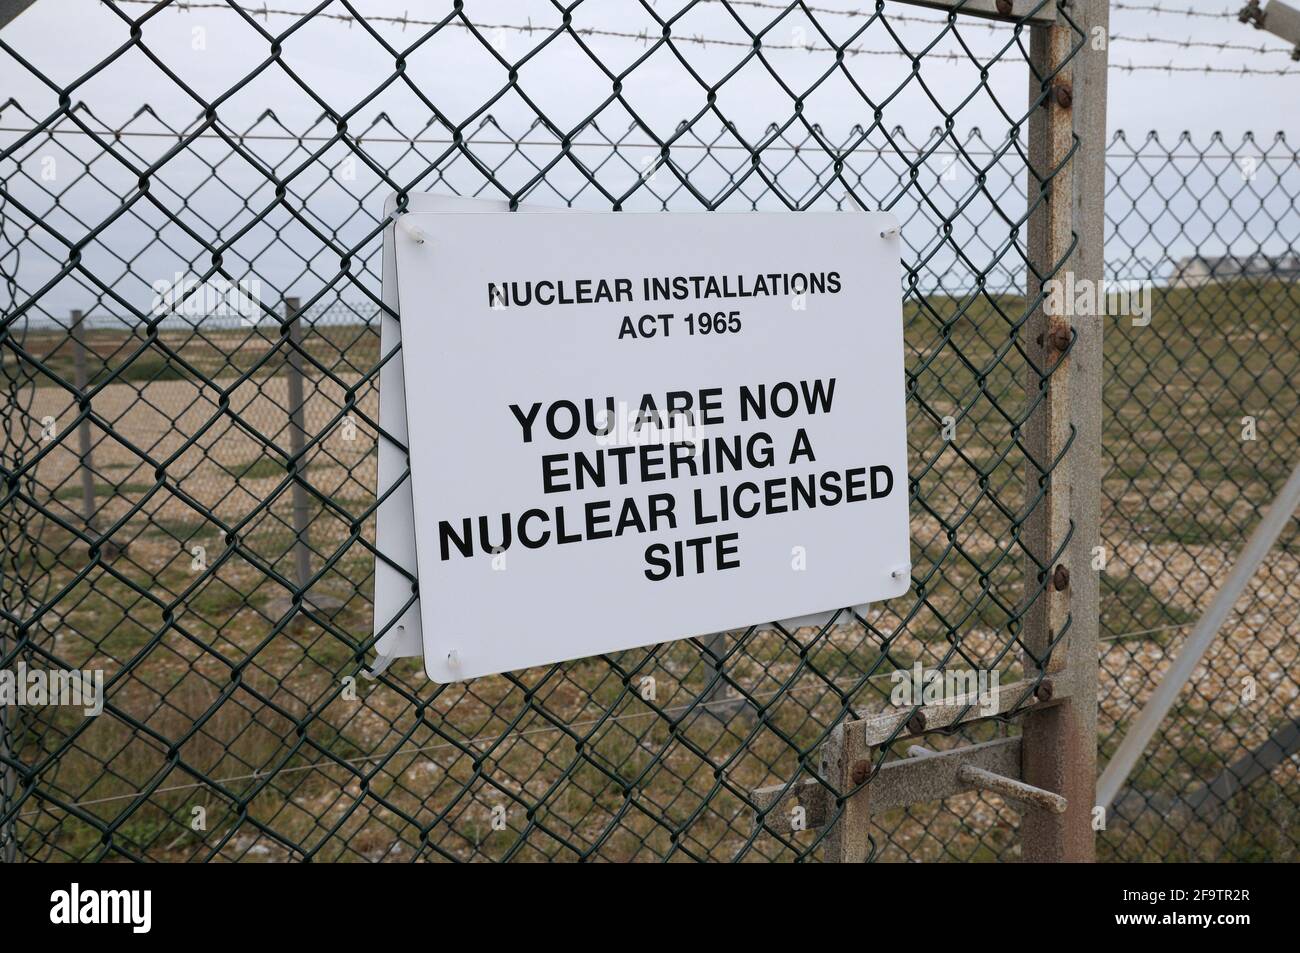 Panneau d'avertissement sur une clôture en fil de fer déclarant « vous entrez maintenant dans un site nucléaire autorisé » en vertu de la Nuclear installations Act 1965, Dungeness, Kent, Royaume-Uni Banque D'Images